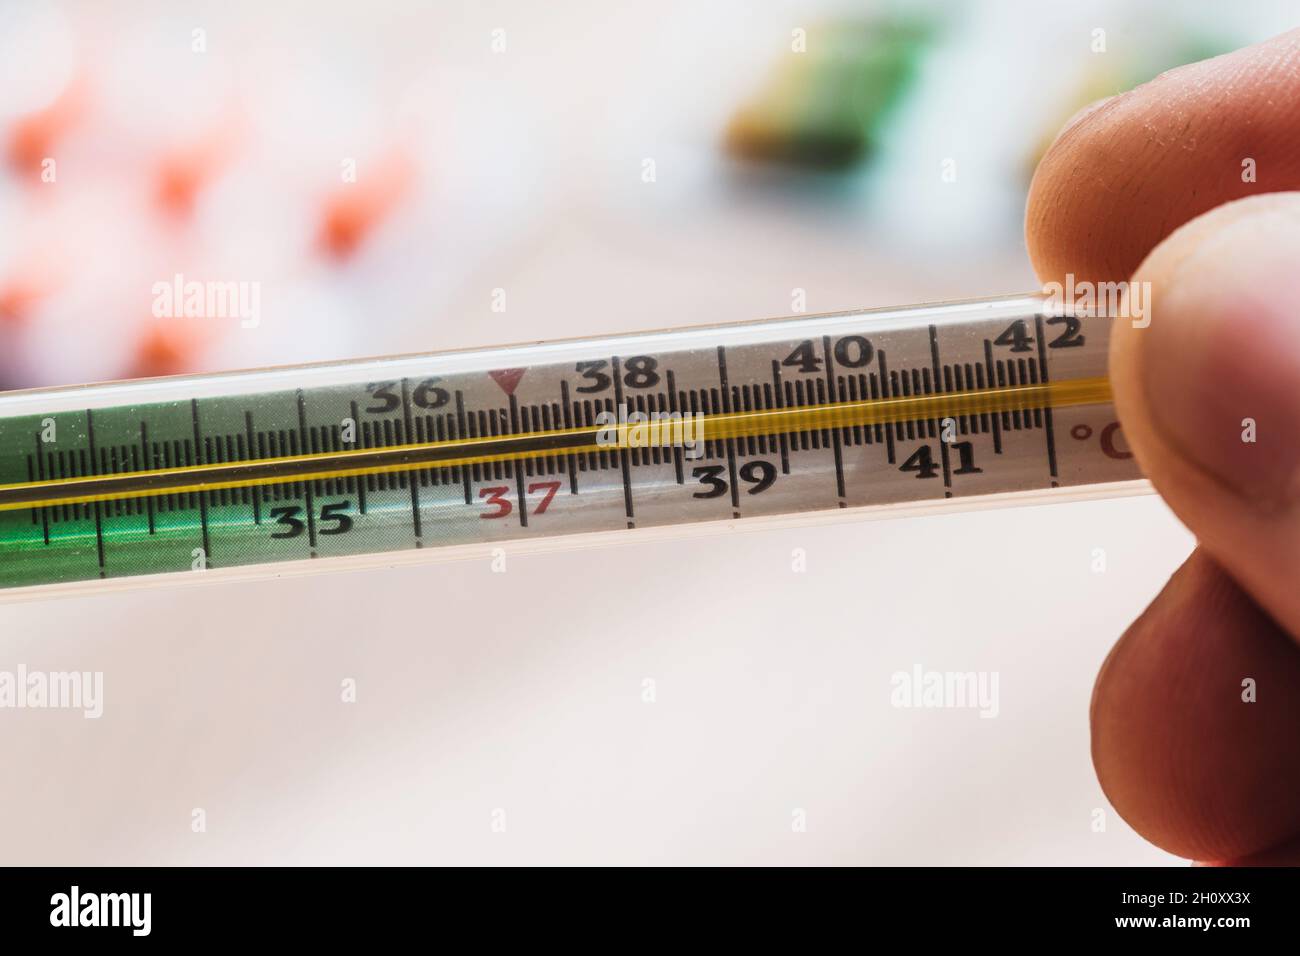 Temperatura 38 su termometro a mercurio - febbre in caso di